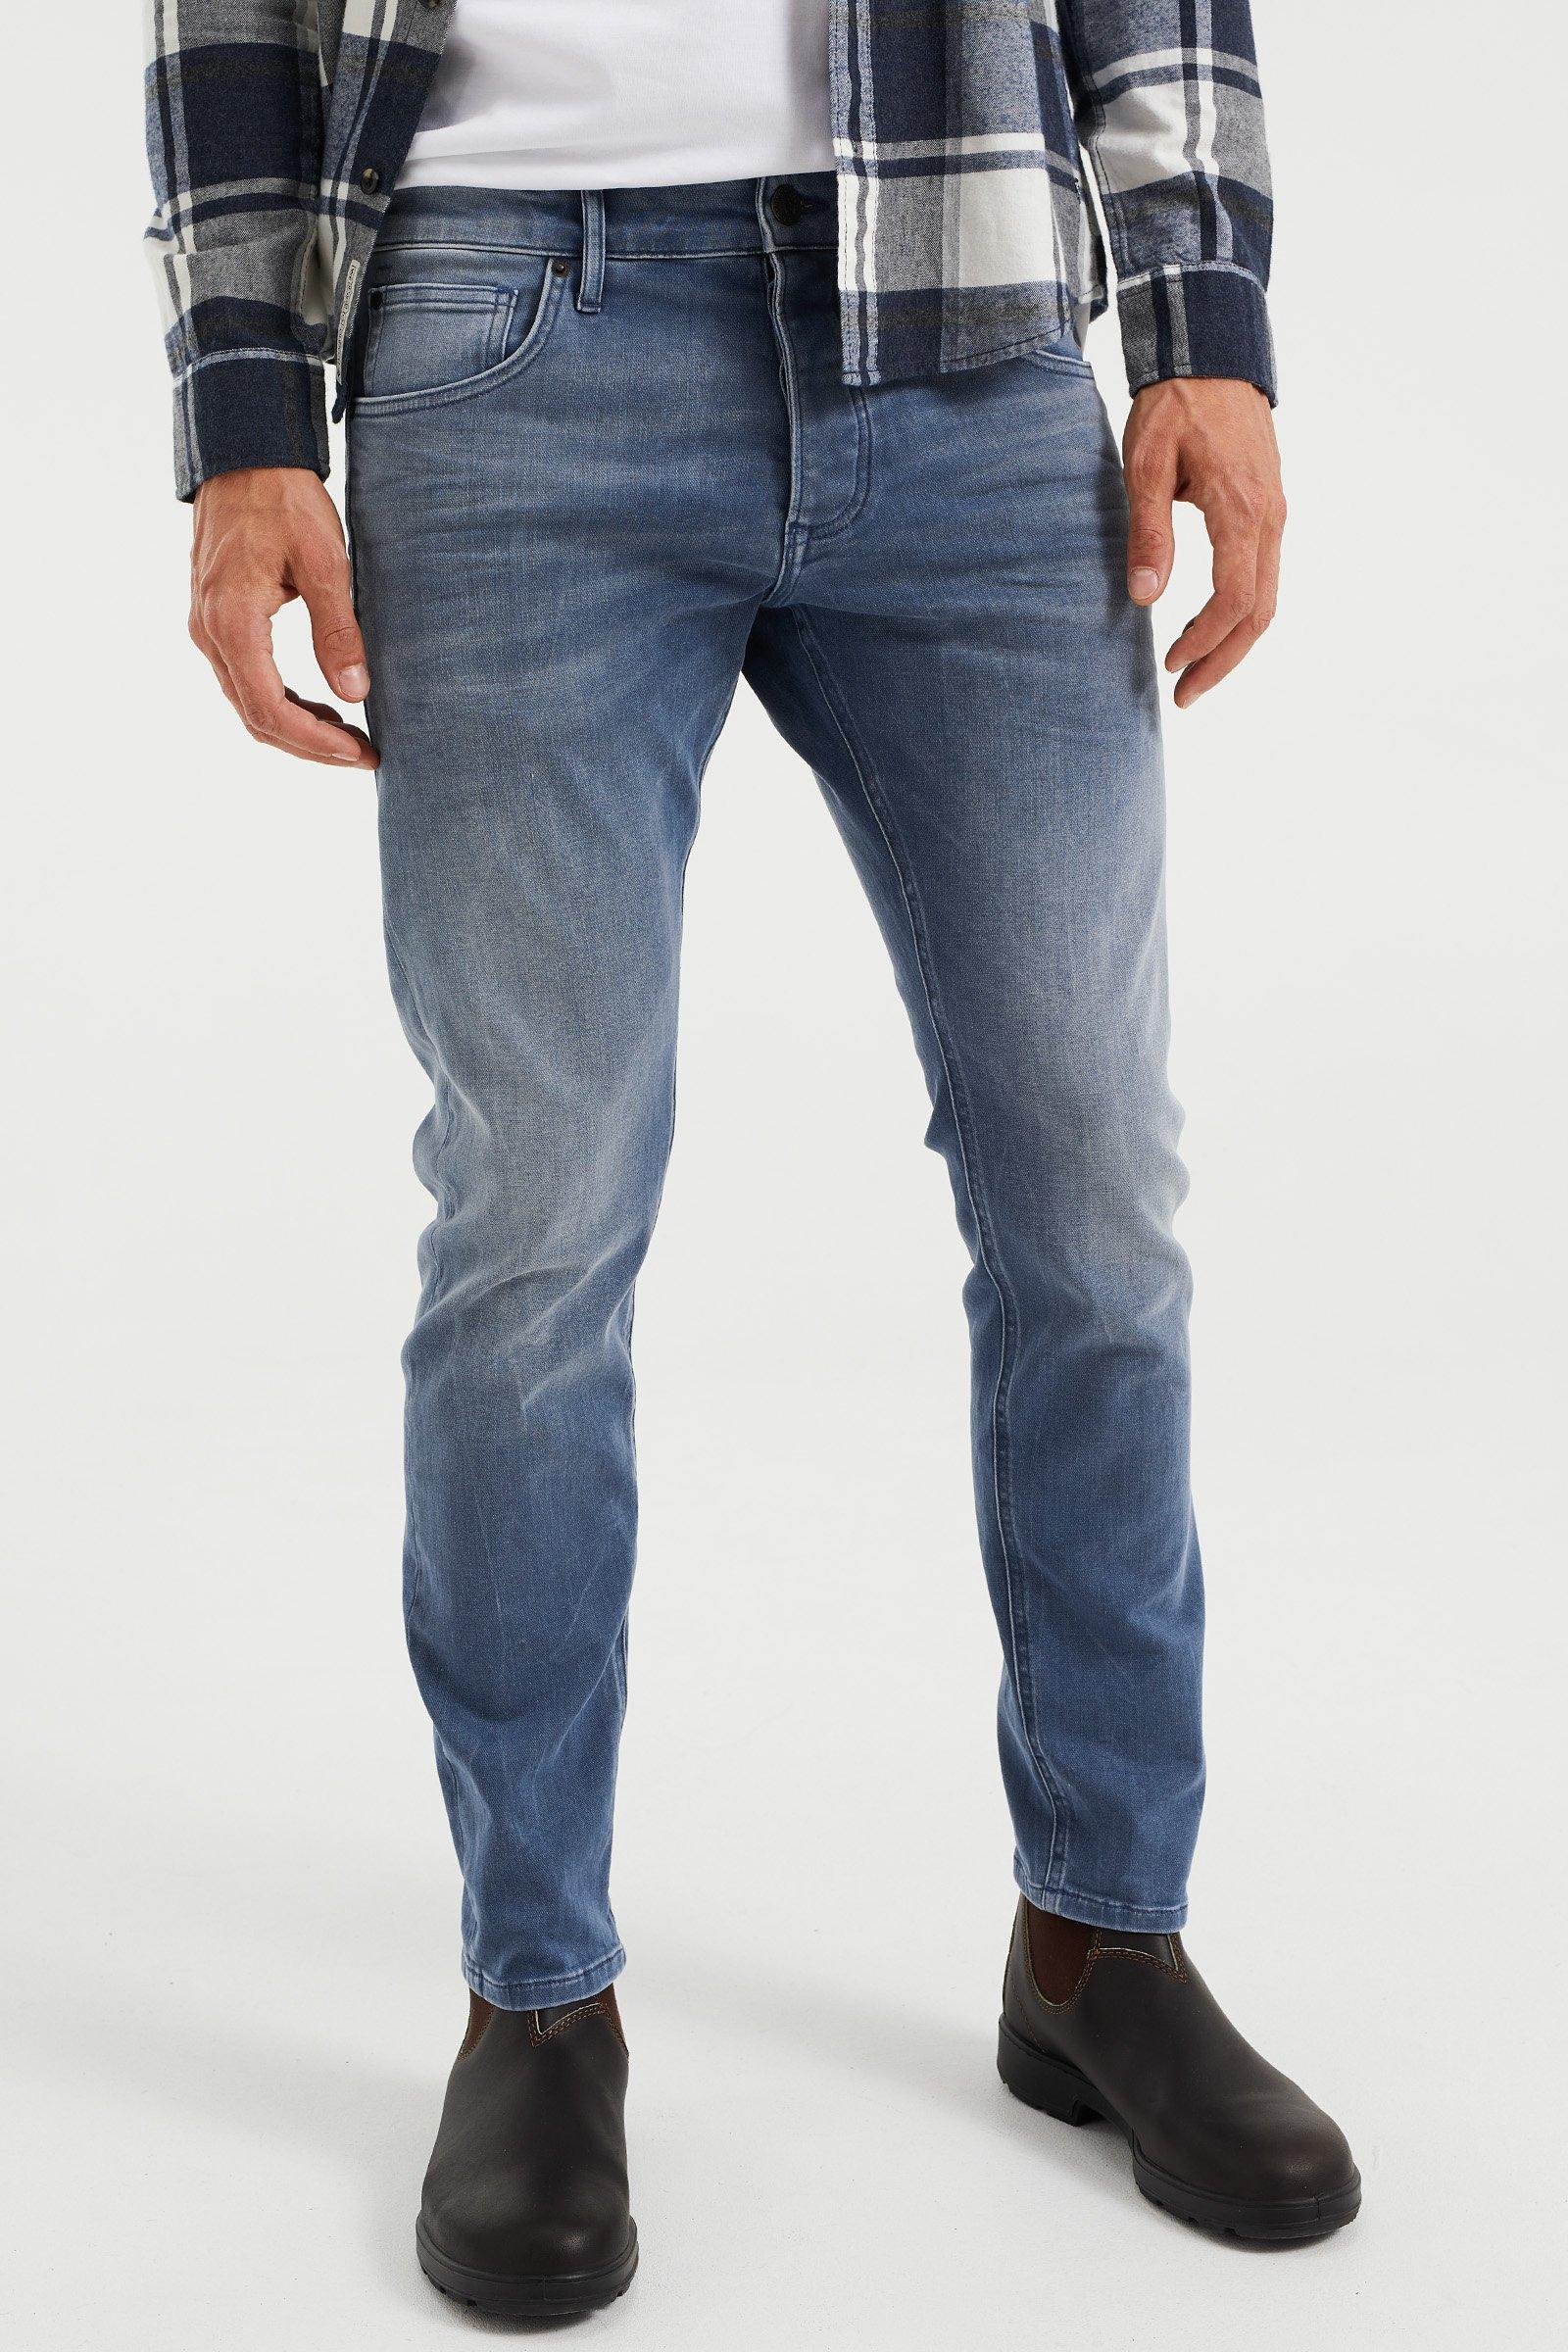 Image of WE Fashion 5-Pocket-Jeans - L34/36